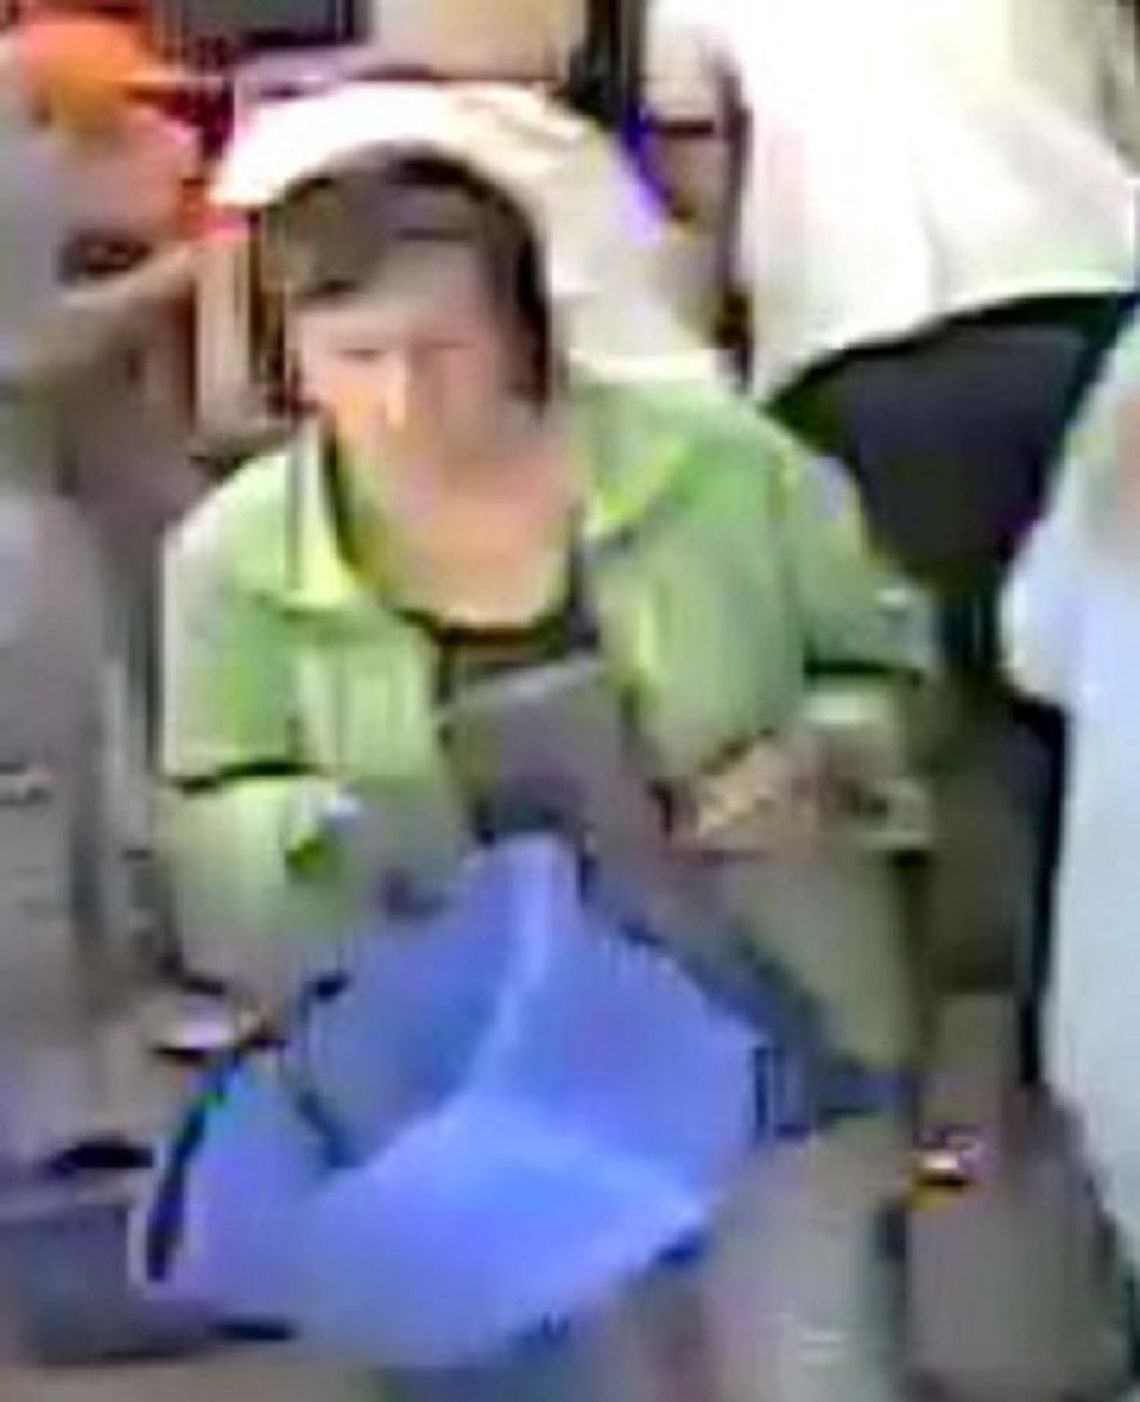 Kobieta ze zdjęcia ukradła portfel. Jest poszukiwana przez policję